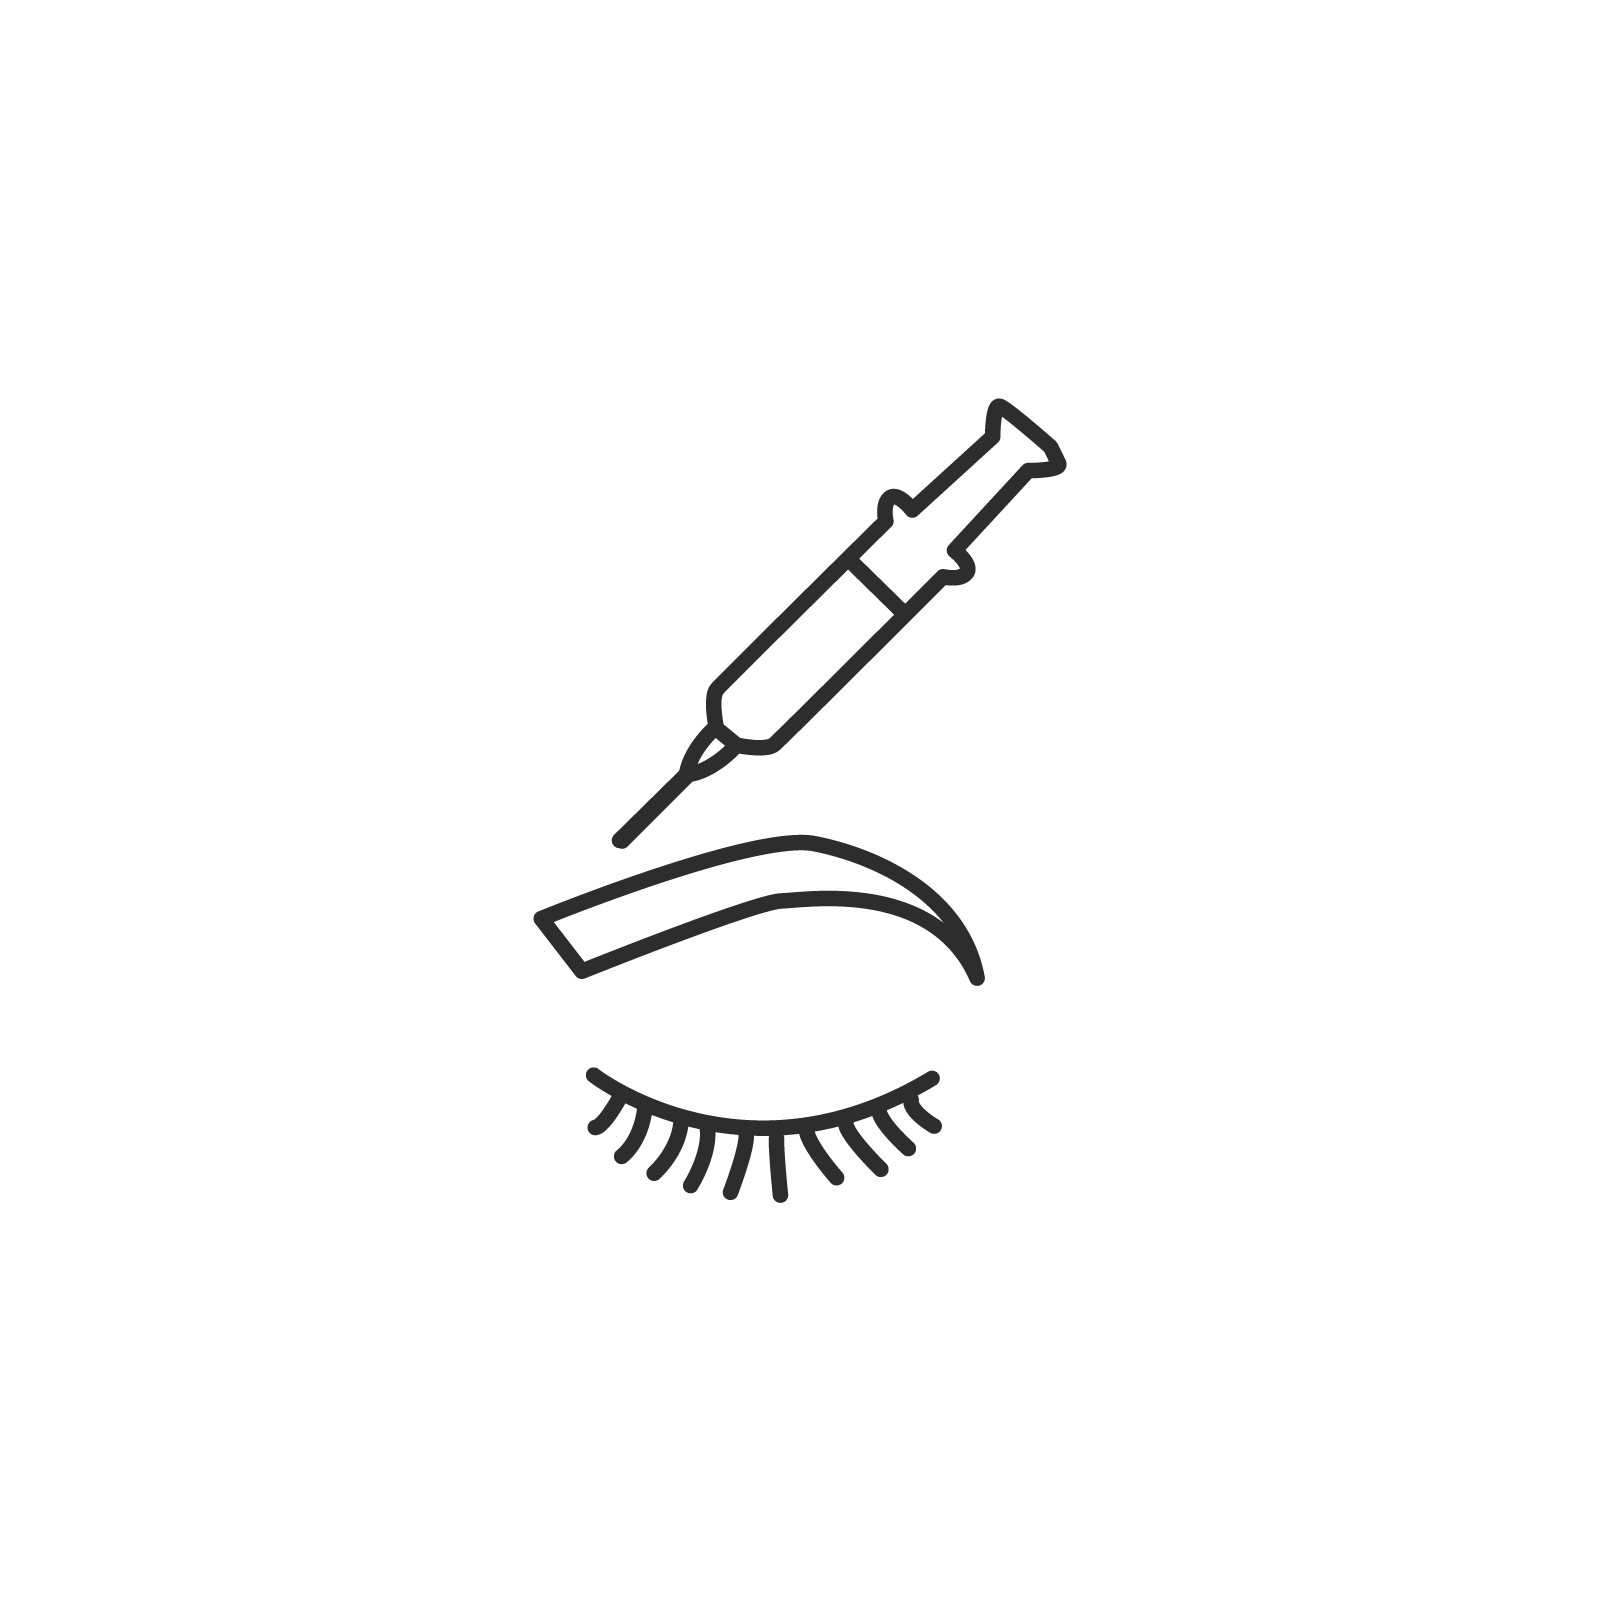 Icono de tratamiento estético de toxina butulínica aplicado en ceja superior y frente con jeringuilla.